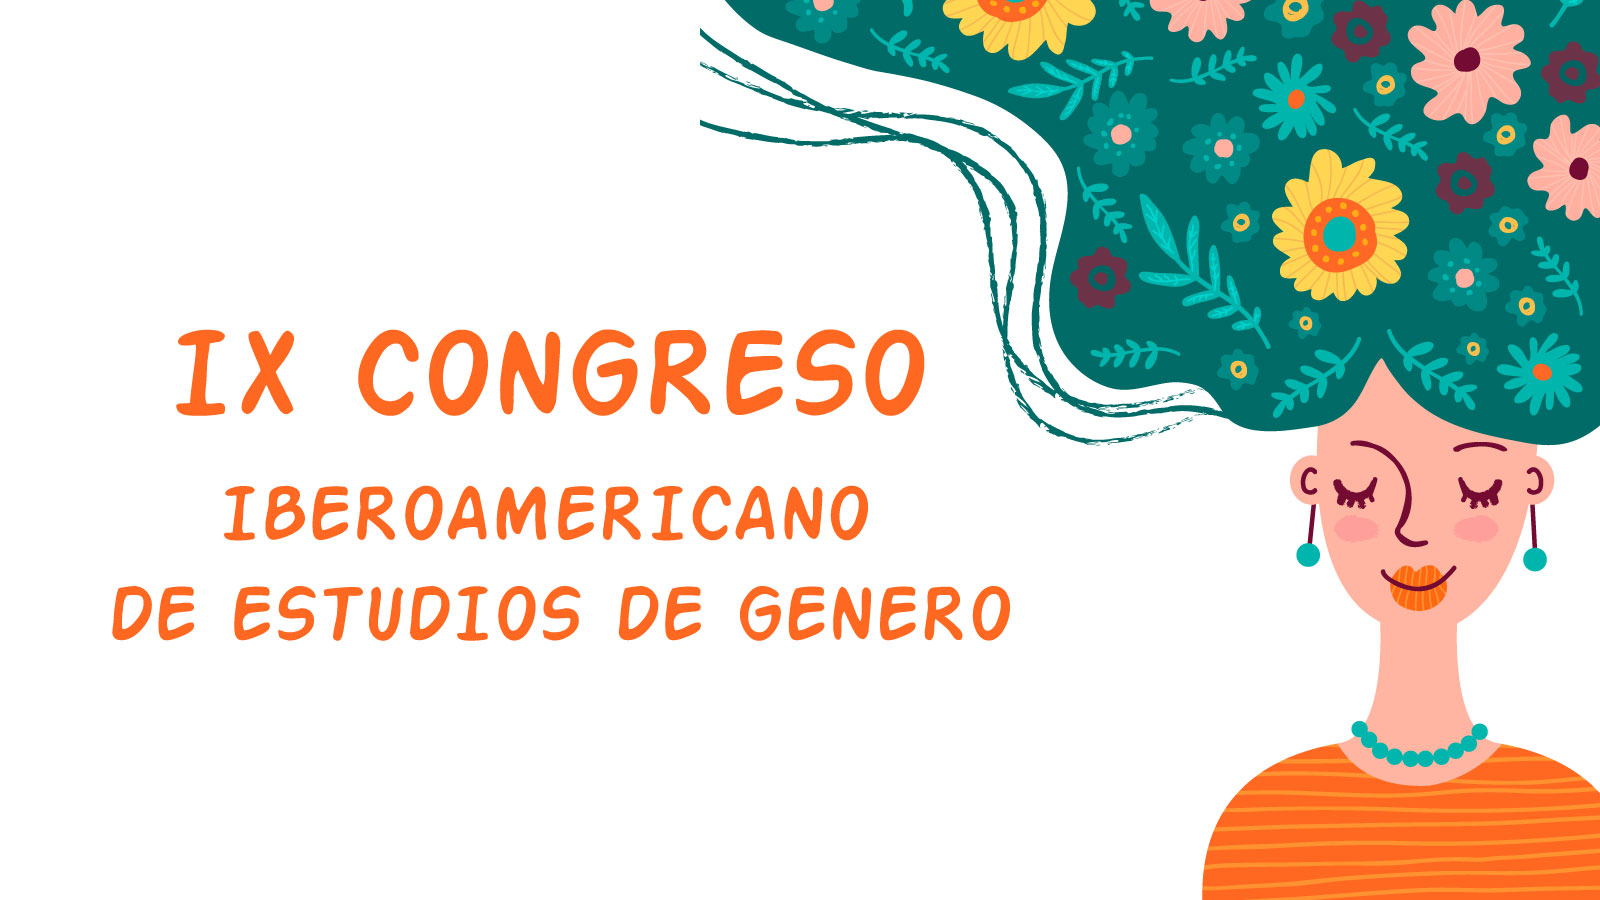 Participación en IX congreso iberoamericano de estudios de genero y XIV jornadas nacionales de historia de las mujeres